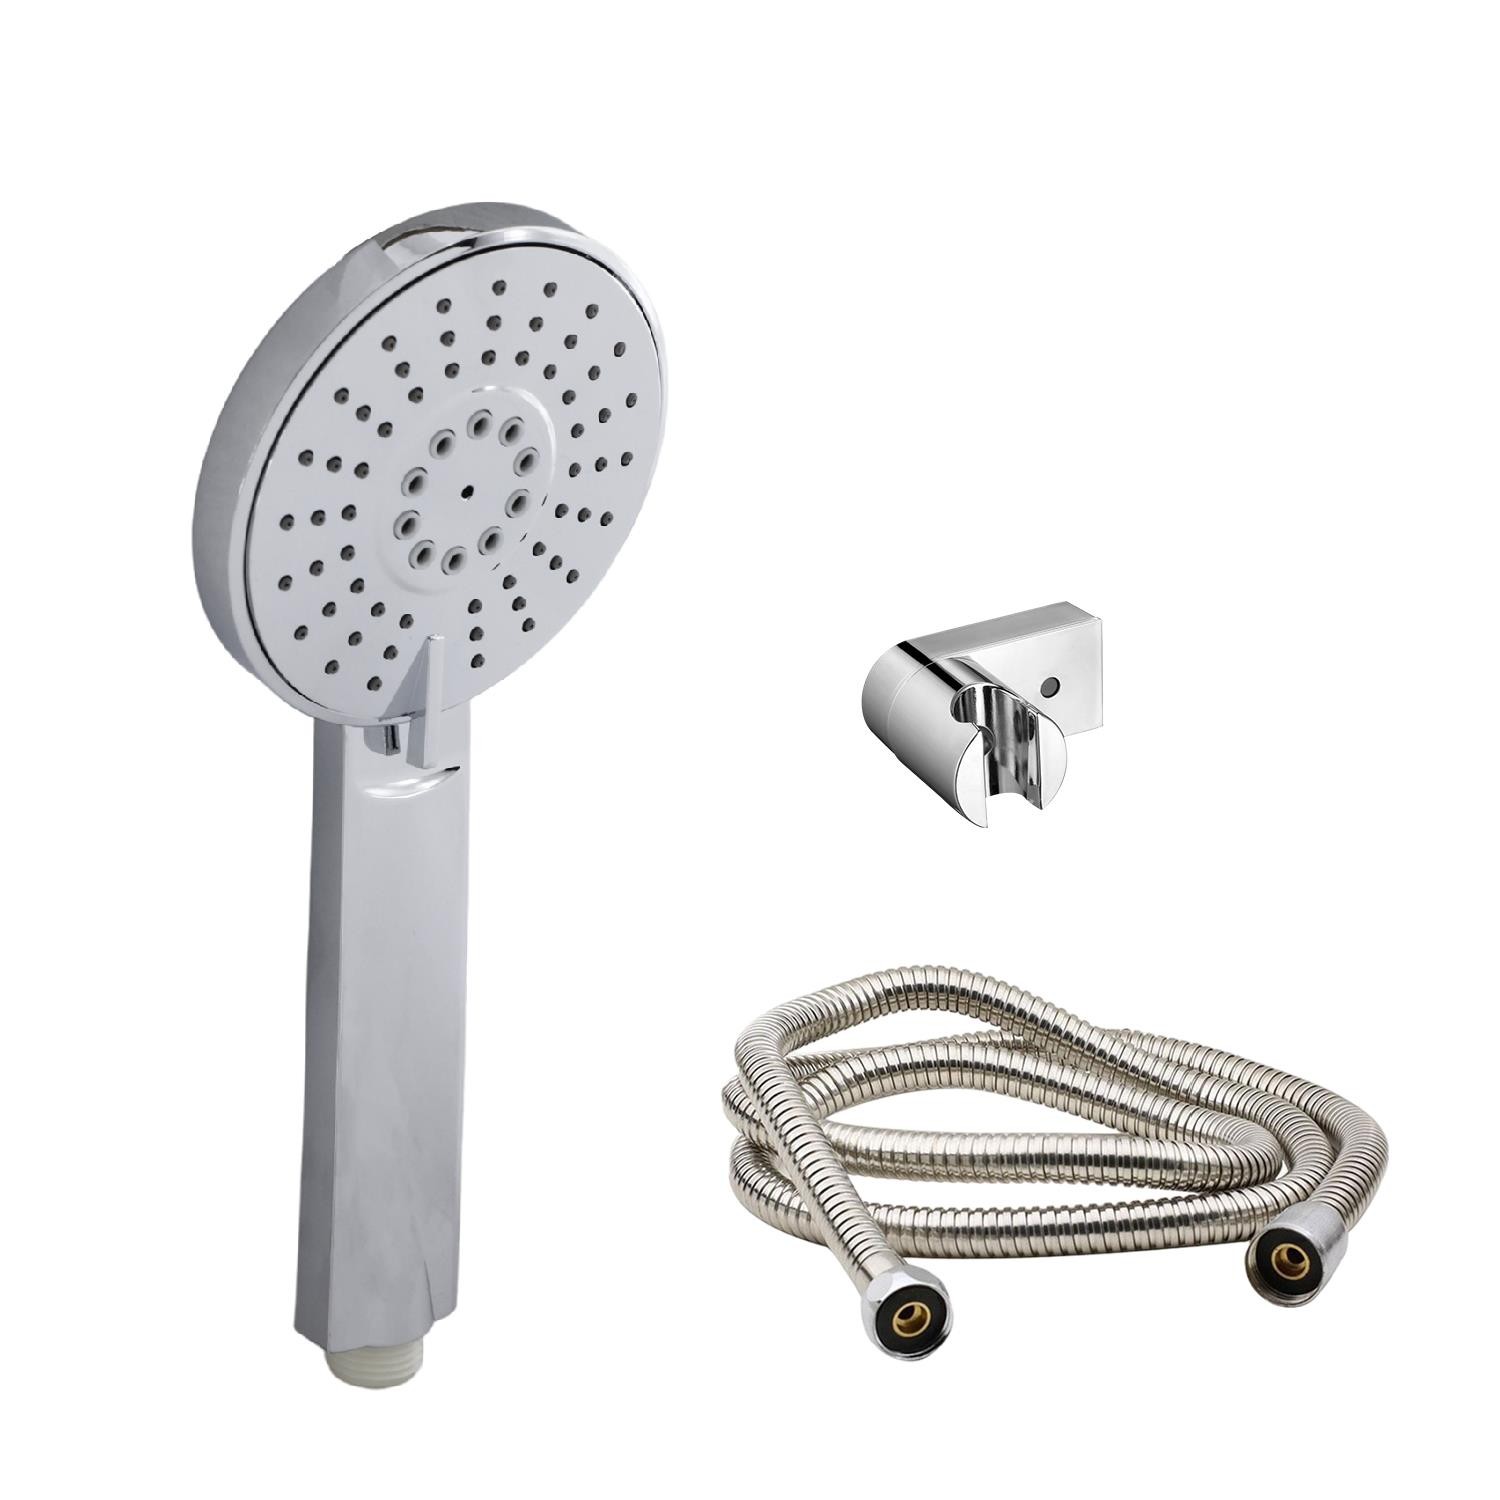 Lüks Duş Başlığı Banyo Fişkiyesi Seti Dikdörtgen Fiskiye Telefon Fonksiyonlu Başlık Metal Hortum